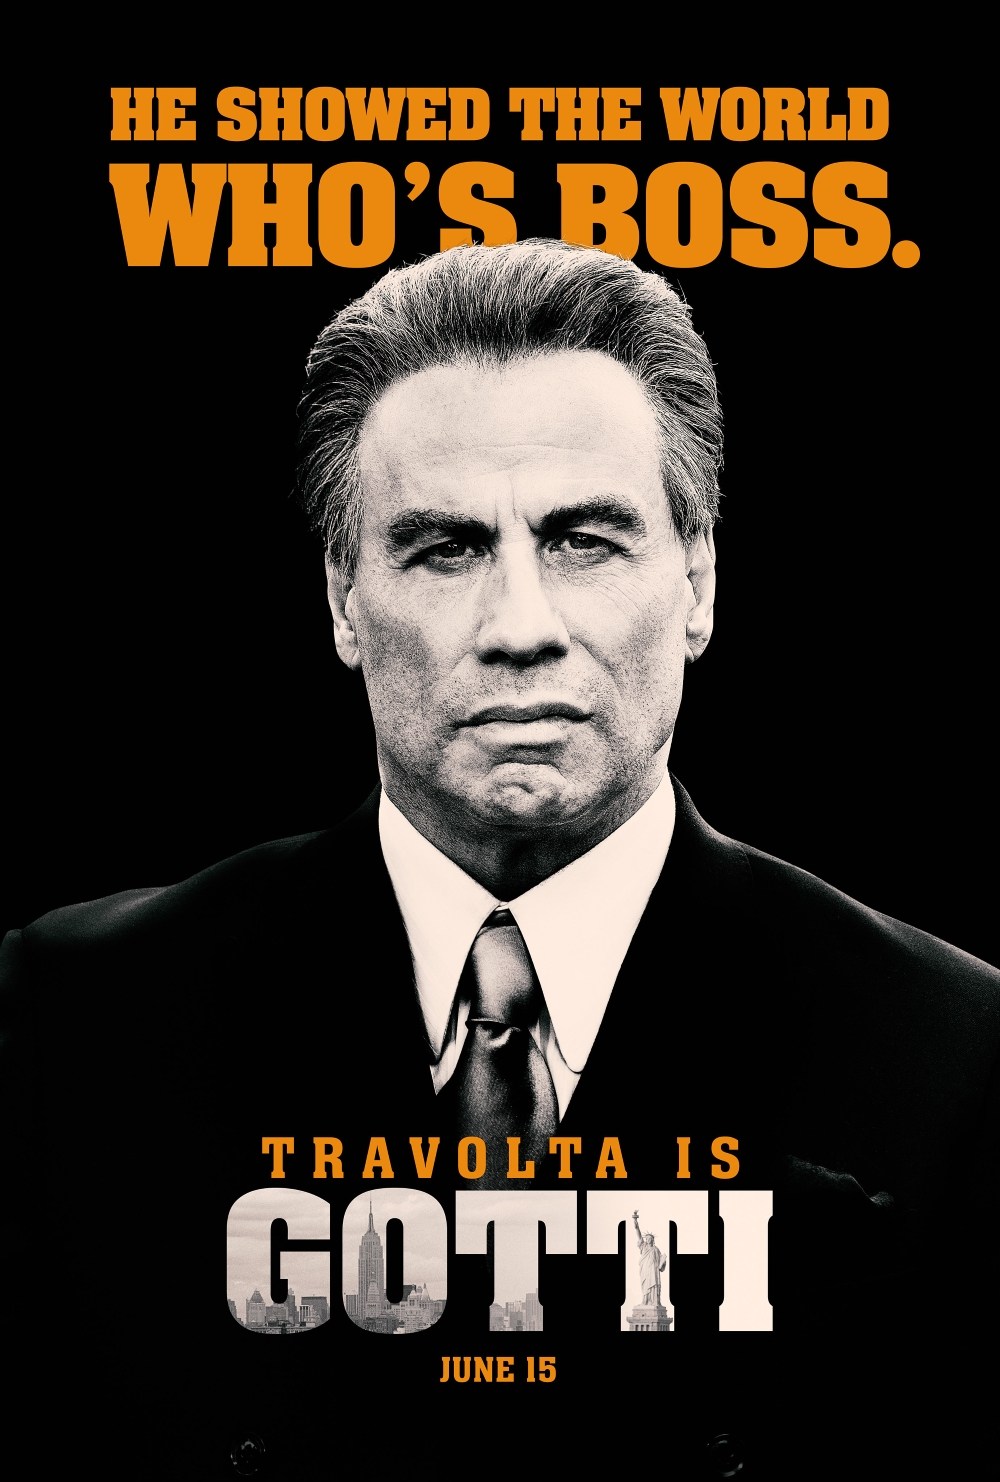 John Travolta on Generation-ntv.com